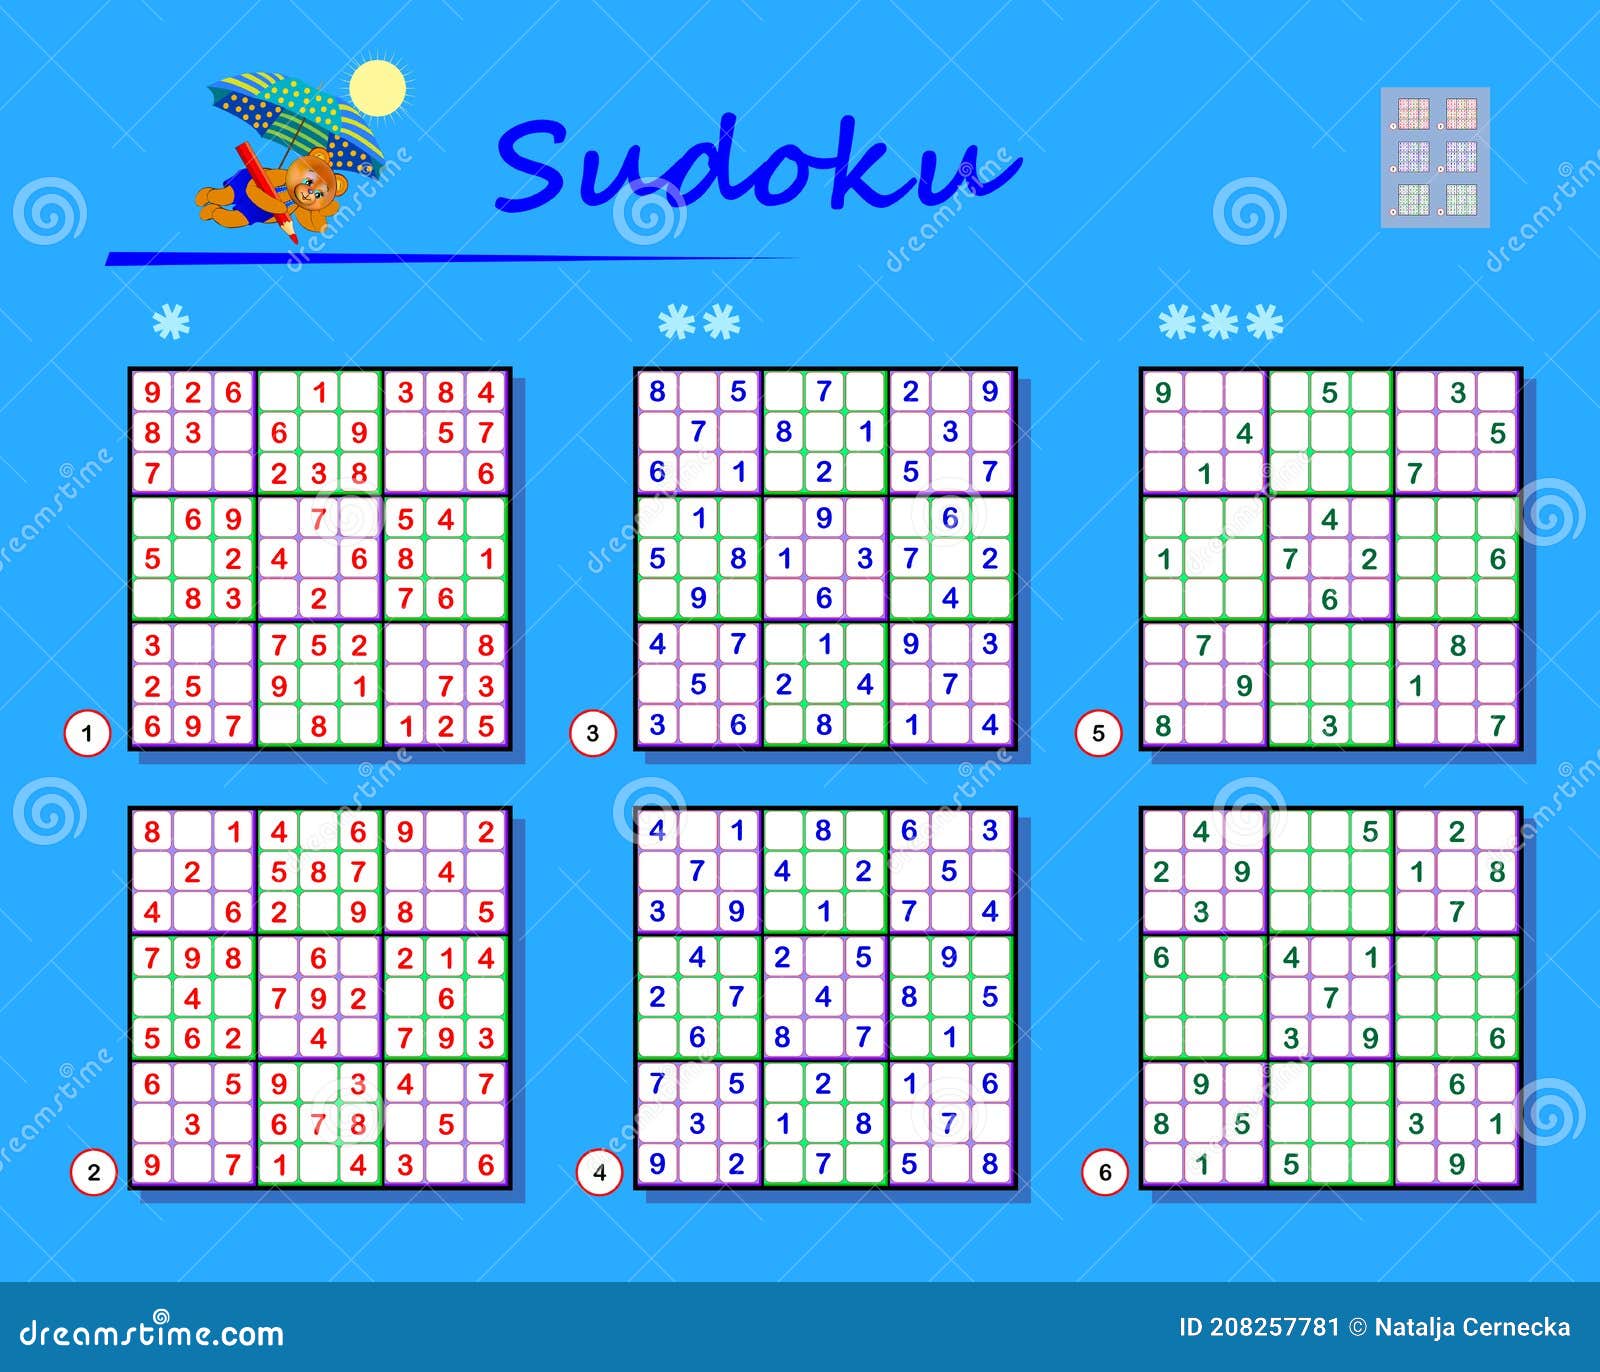 Jogos Com Leite - Gostam de Sudoku? Pra quem curte, este é bem divertido e  difícil!  Atentem que  além das regras normais de sudoku, existe uma regra a mais: Restrição do